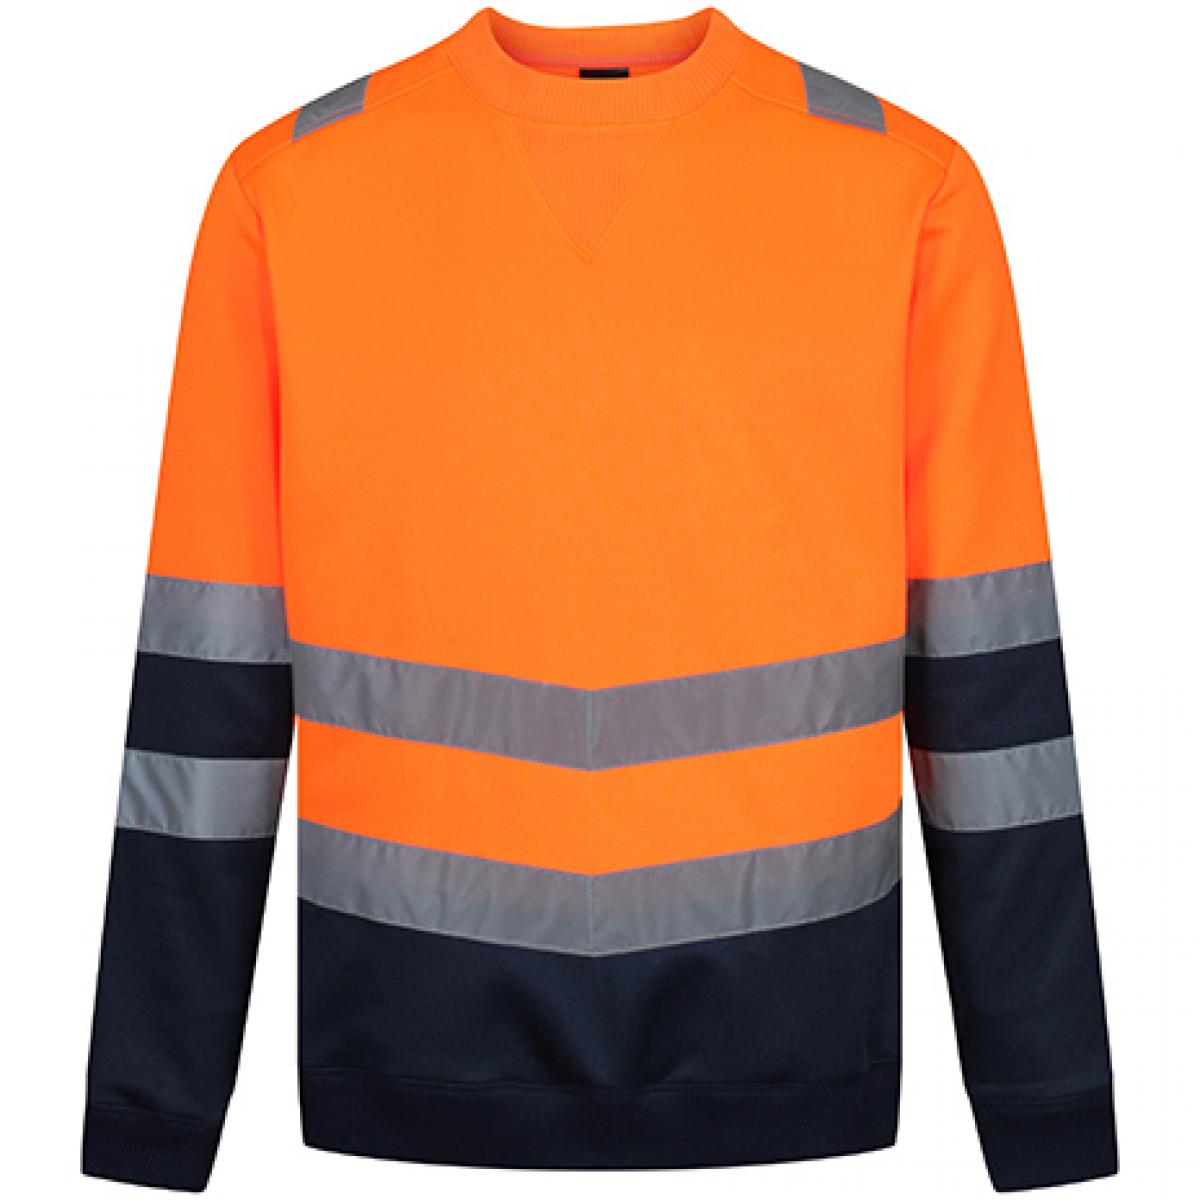 Hersteller: Regatta High Visibility Herstellernummer: TRF656 Artikelbezeichnung: Pro Hi Vis Sweat Top - Sicherheitssweatshirt Farbe: Orange